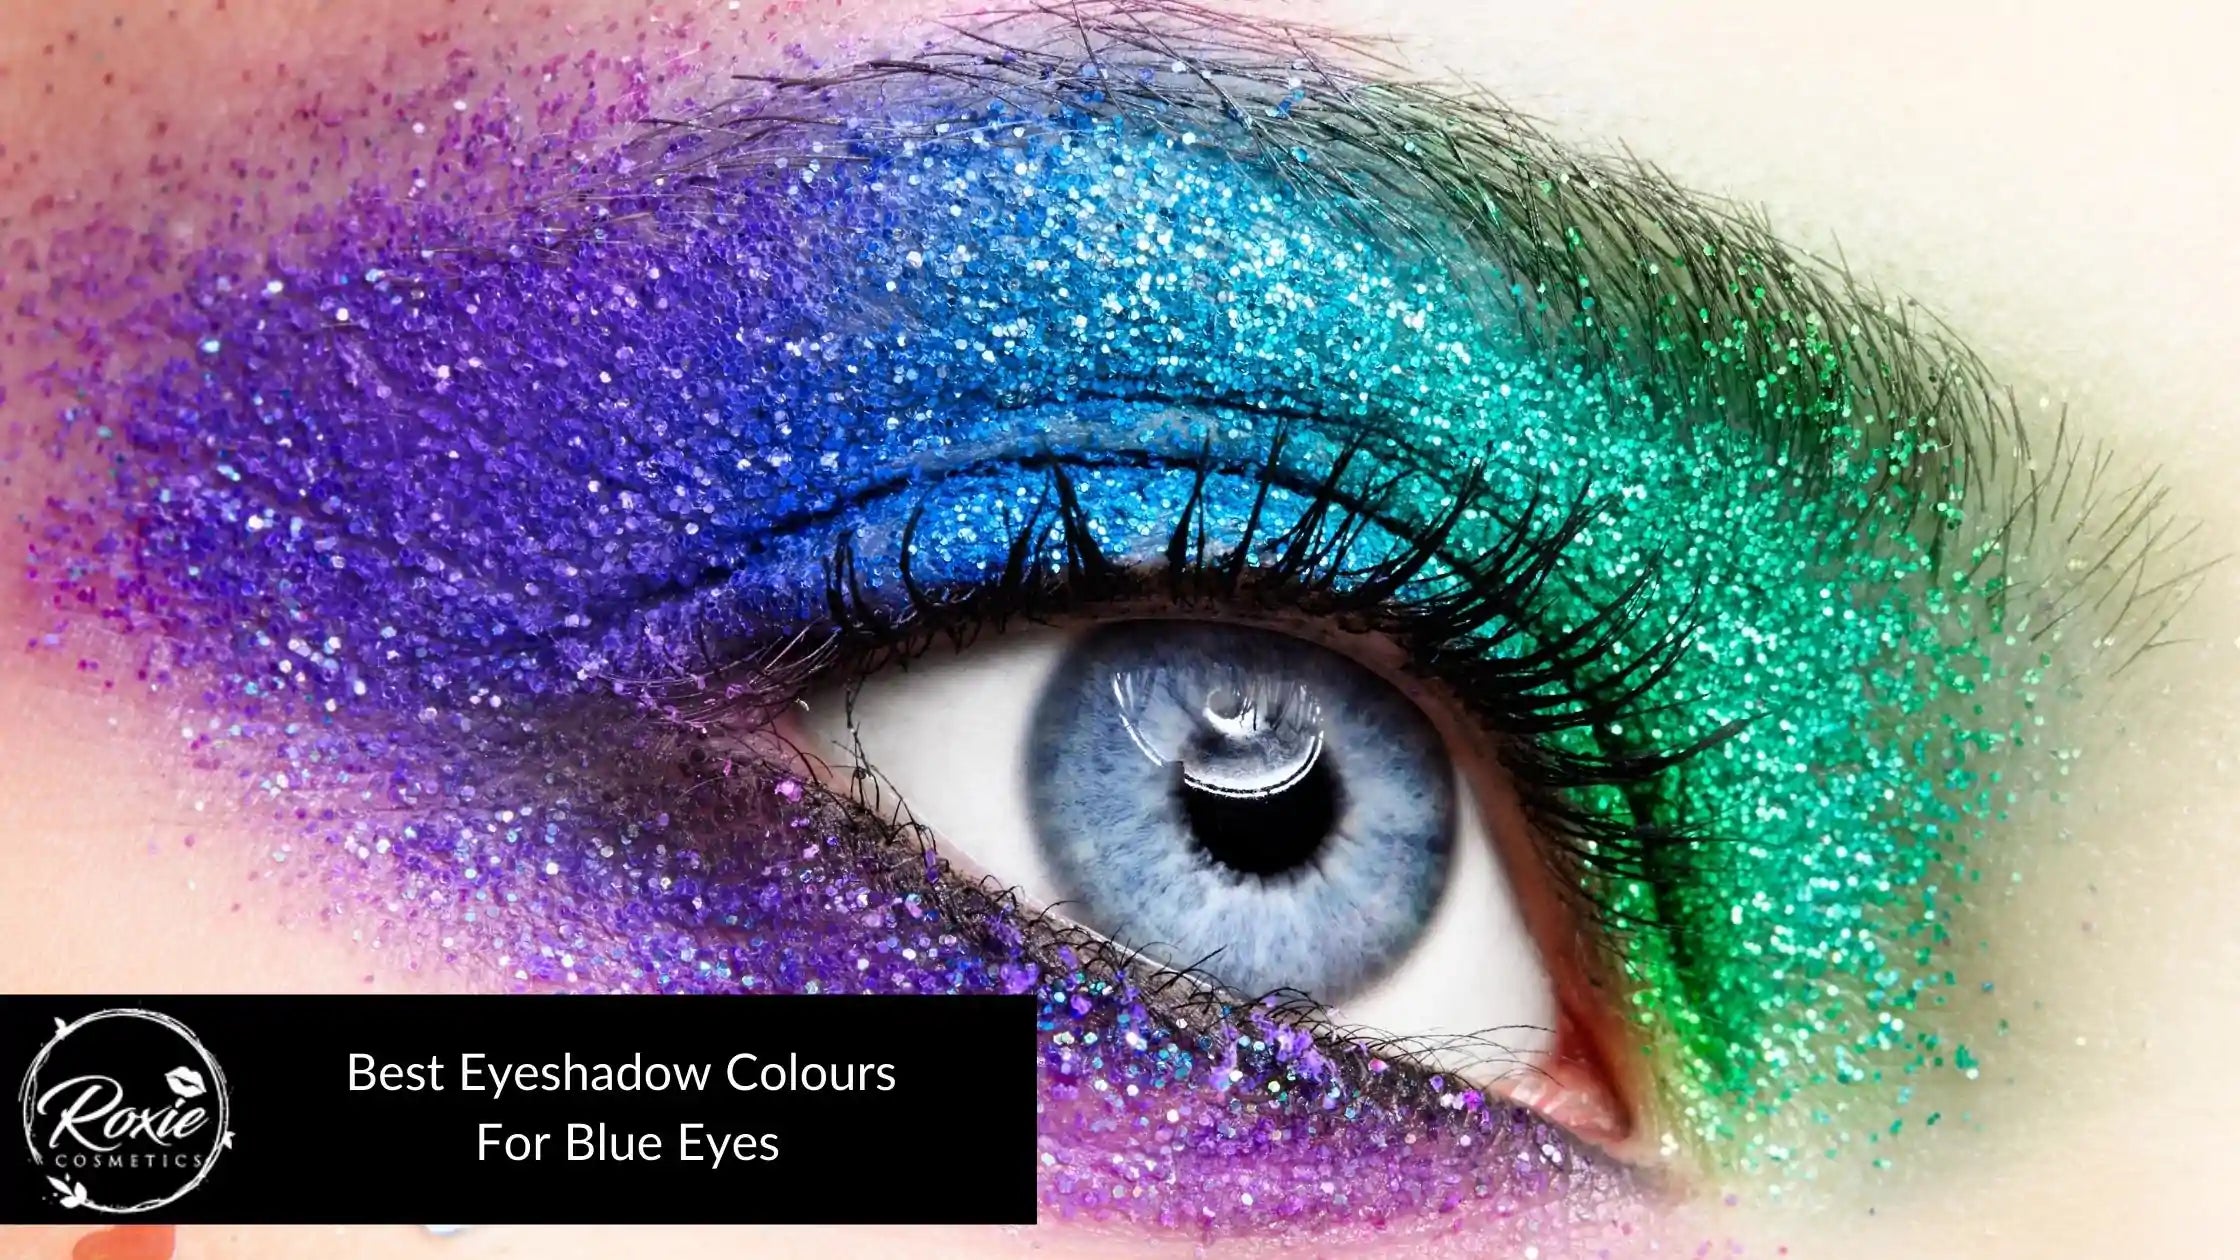 8 Best Eyeshadow Colors to Make Blue Eyes POP!